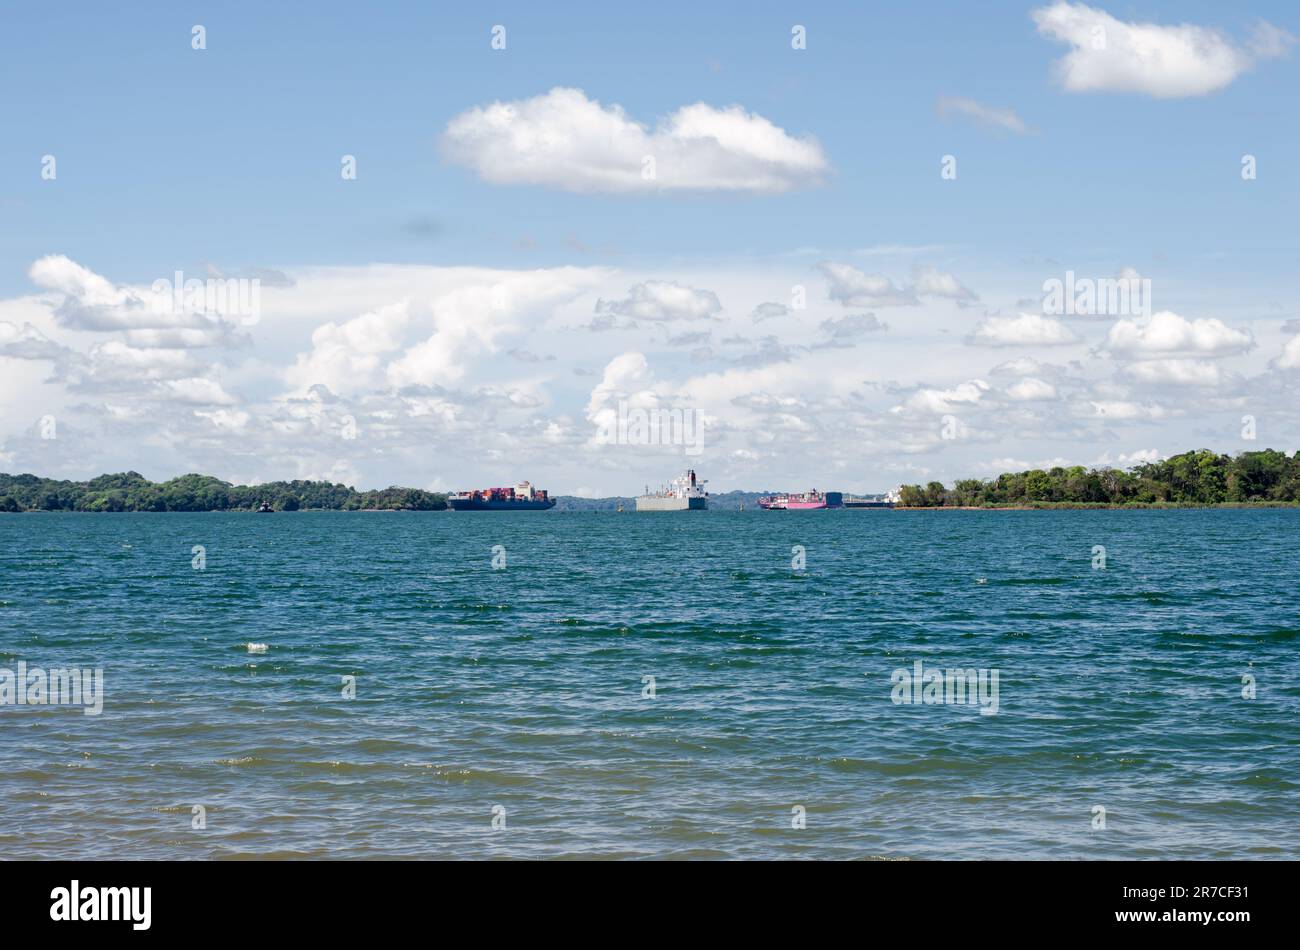 Gatun Lake. Les navires vus au loin attendent le passage à travers le canal de Panama Banque D'Images